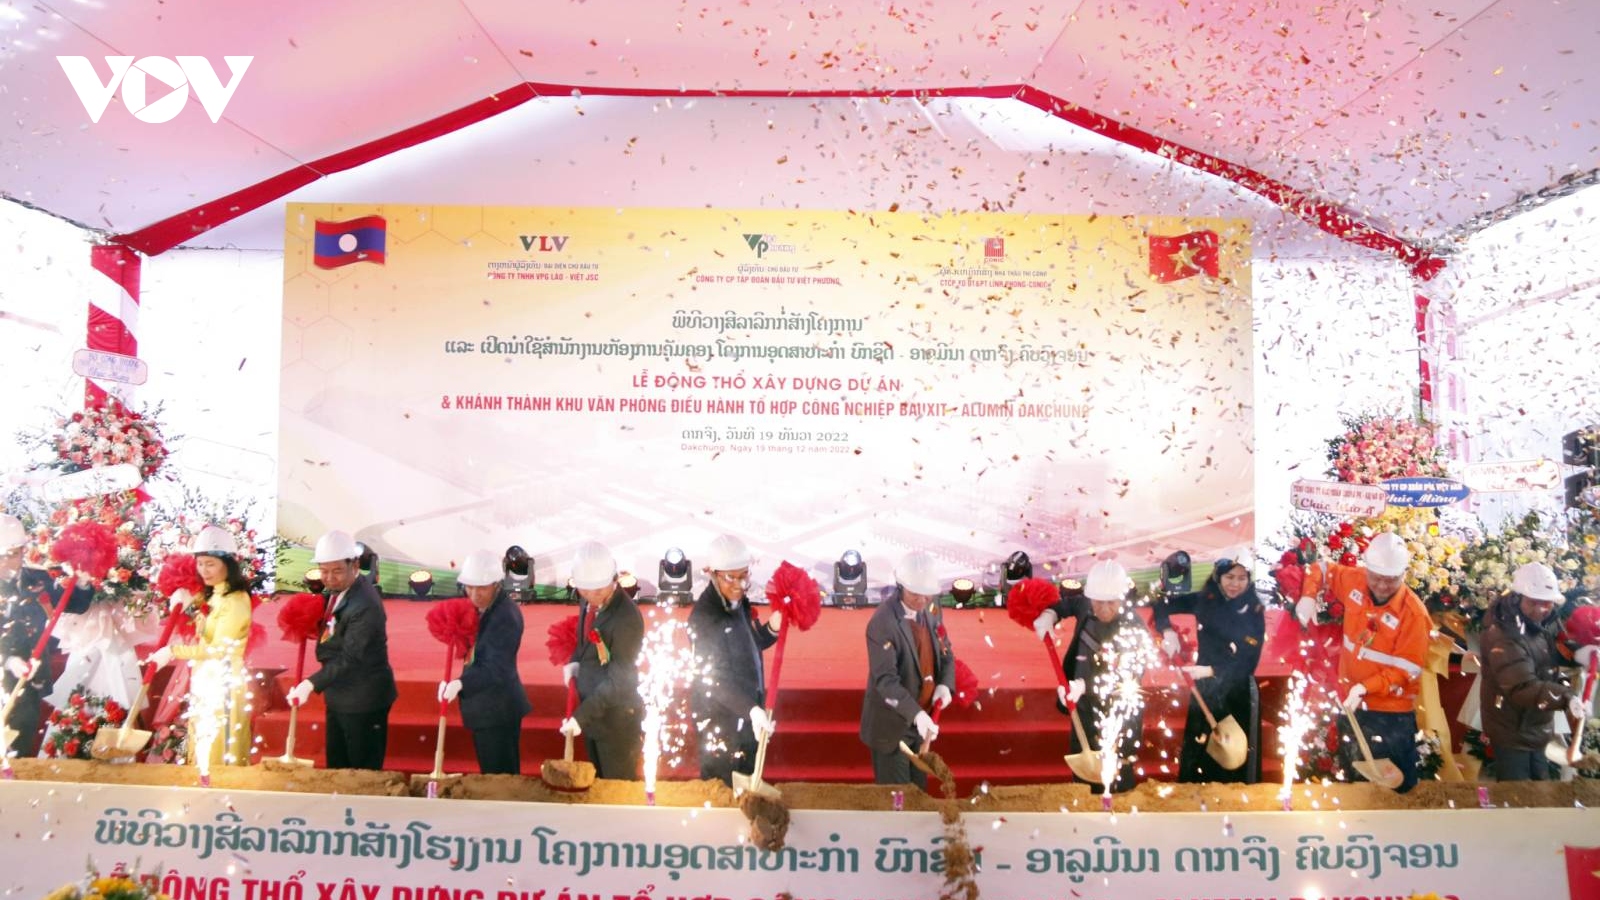 Động thổ dự án Bauxit-Alumin Dakcheung lớn nhất của Việt Nam tại Lào